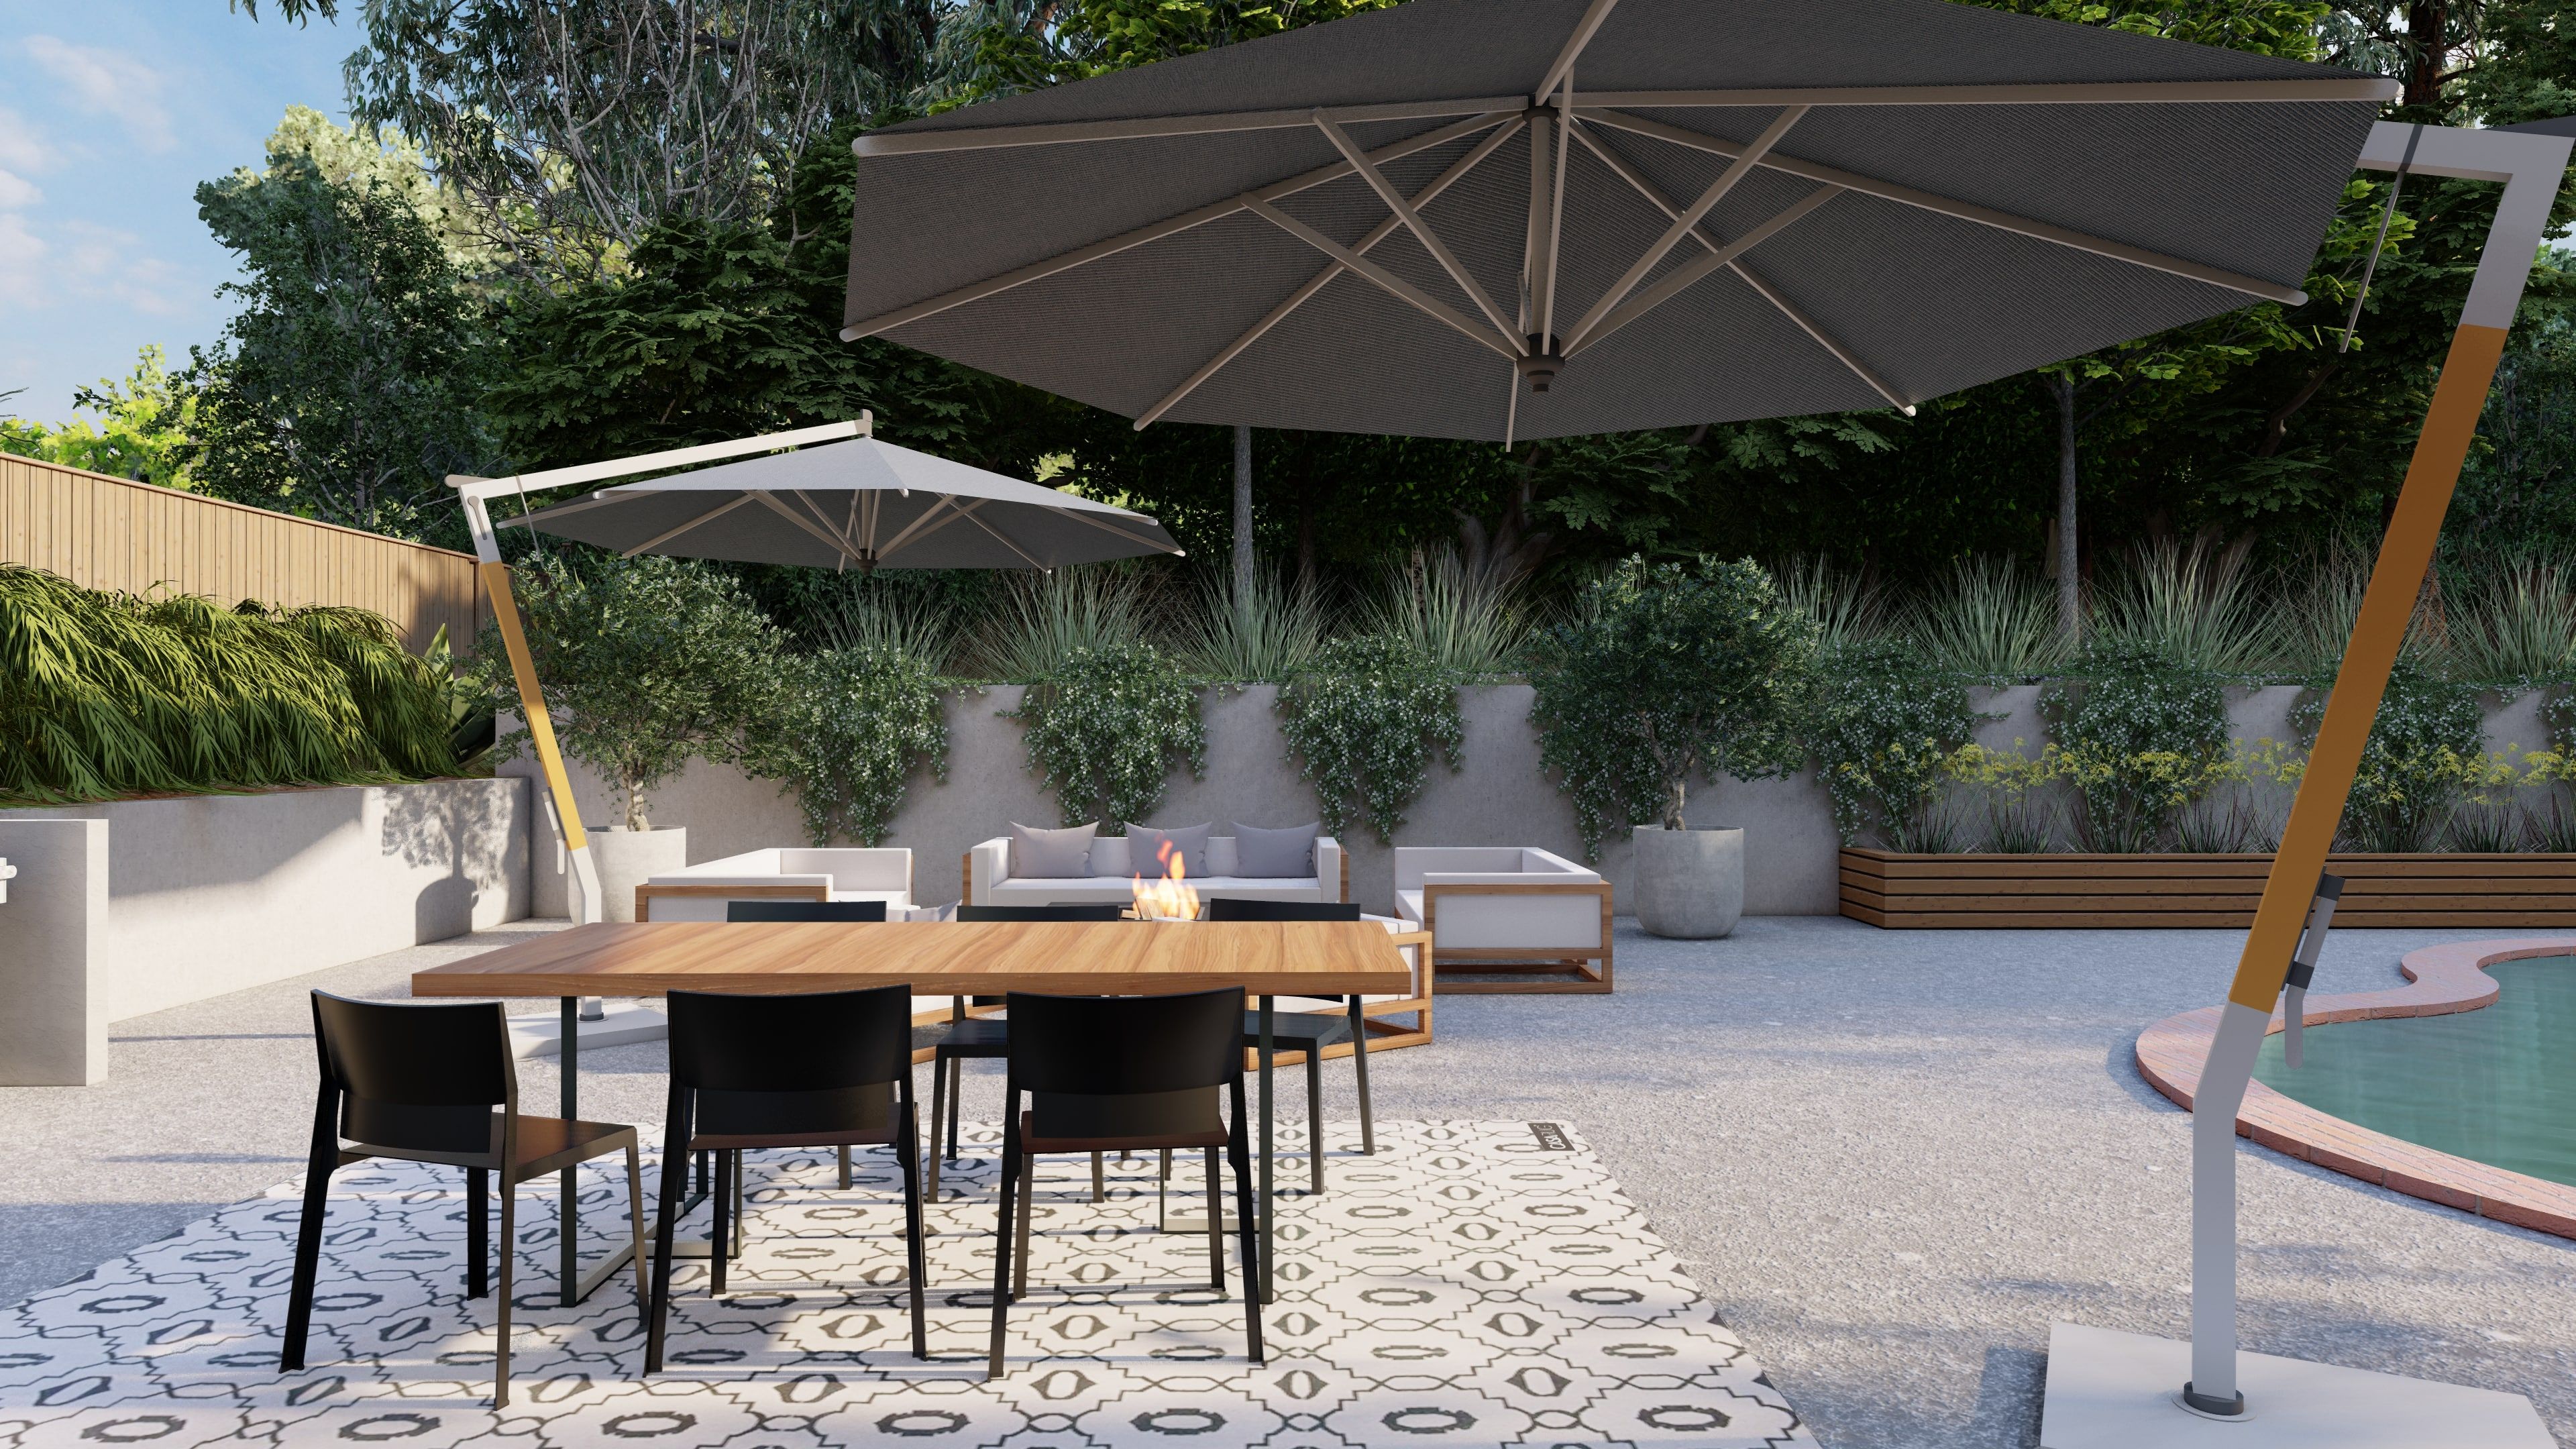 sun shade patio ideas with cantilever umbrellas